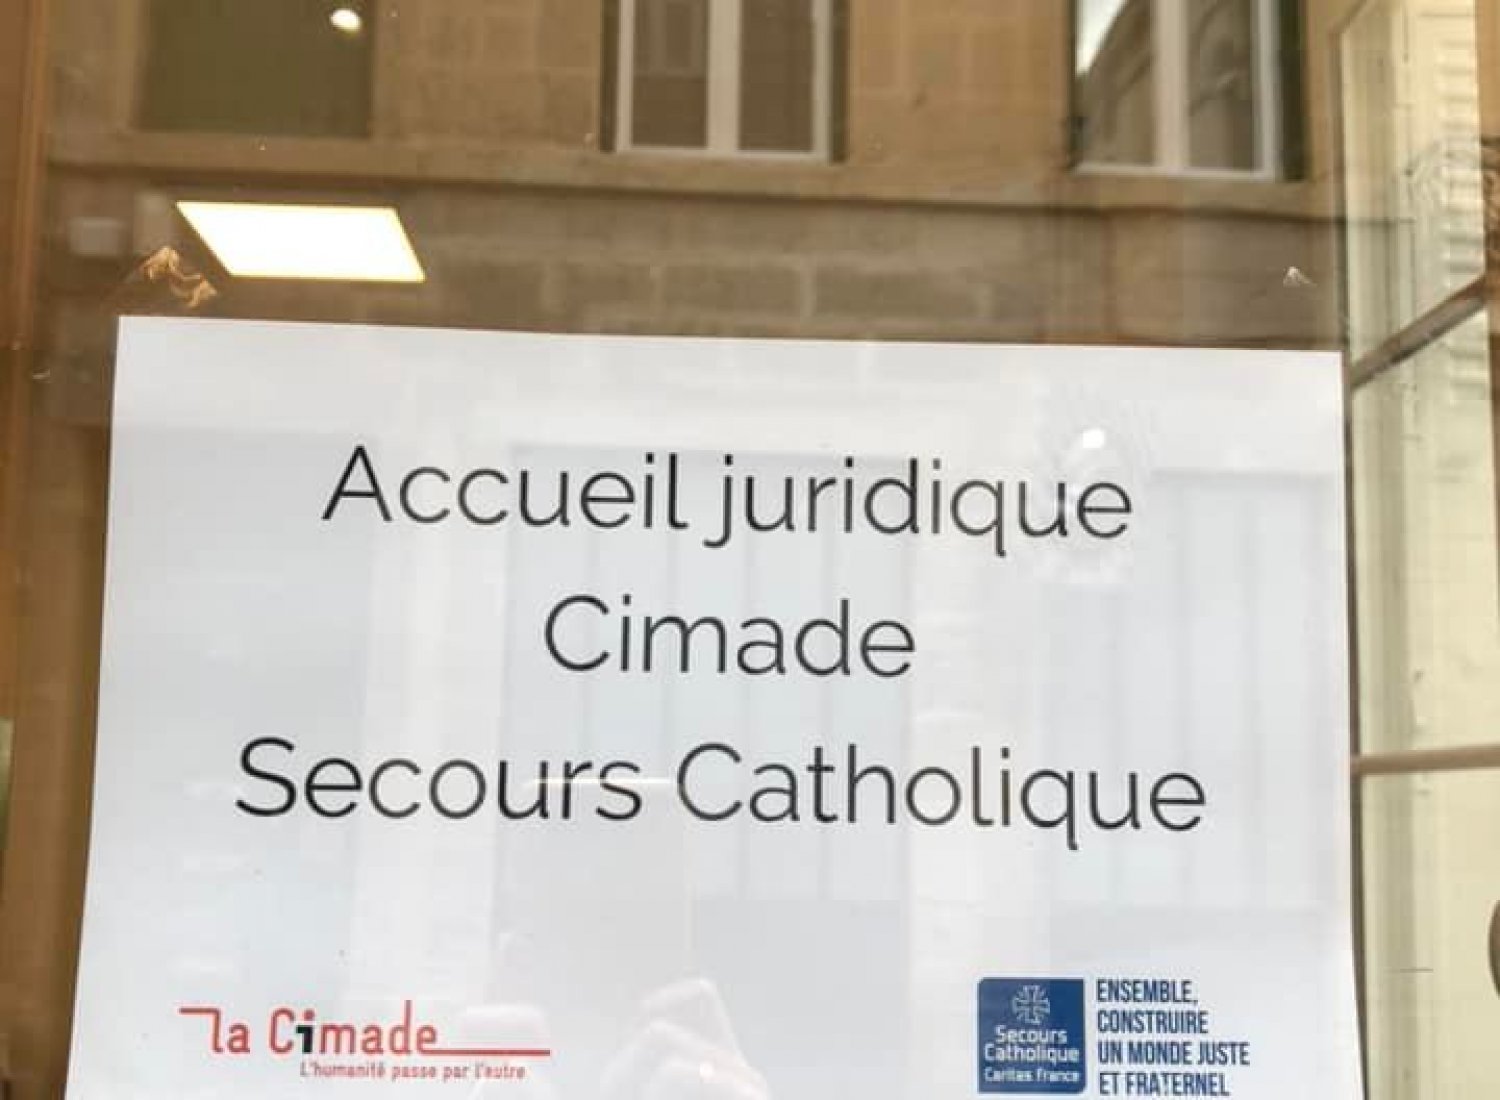 Accueil juridique initié conjointement par la Cimade et Secours Catholique de la Loire